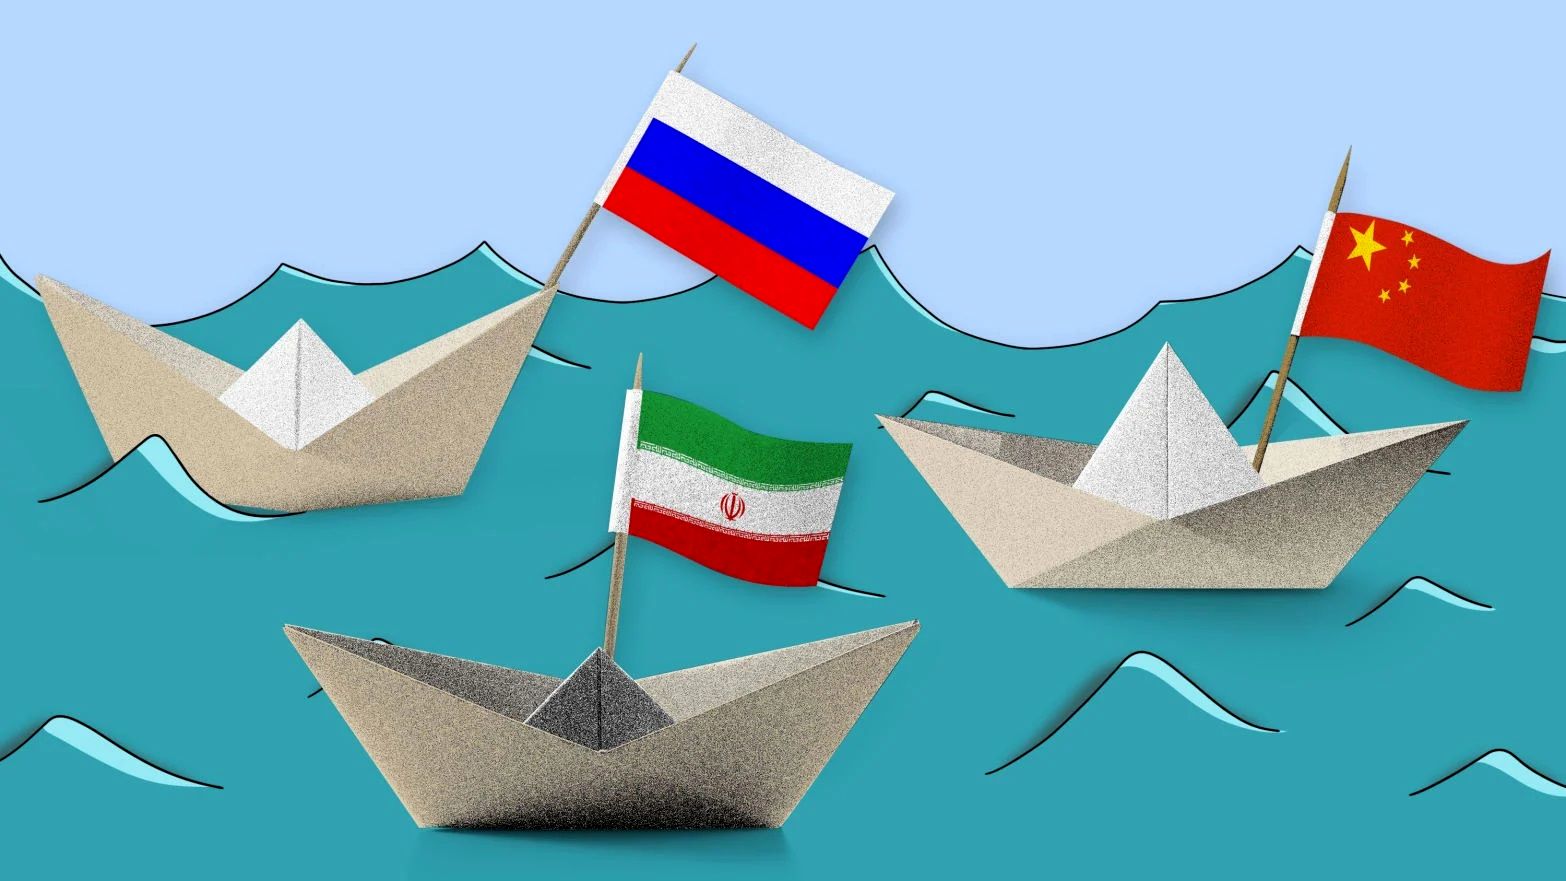 روابط خوب ایران با روسیه دلیلی برای پذیرش اقدامات تجاوزکارانه نیست+فیلم